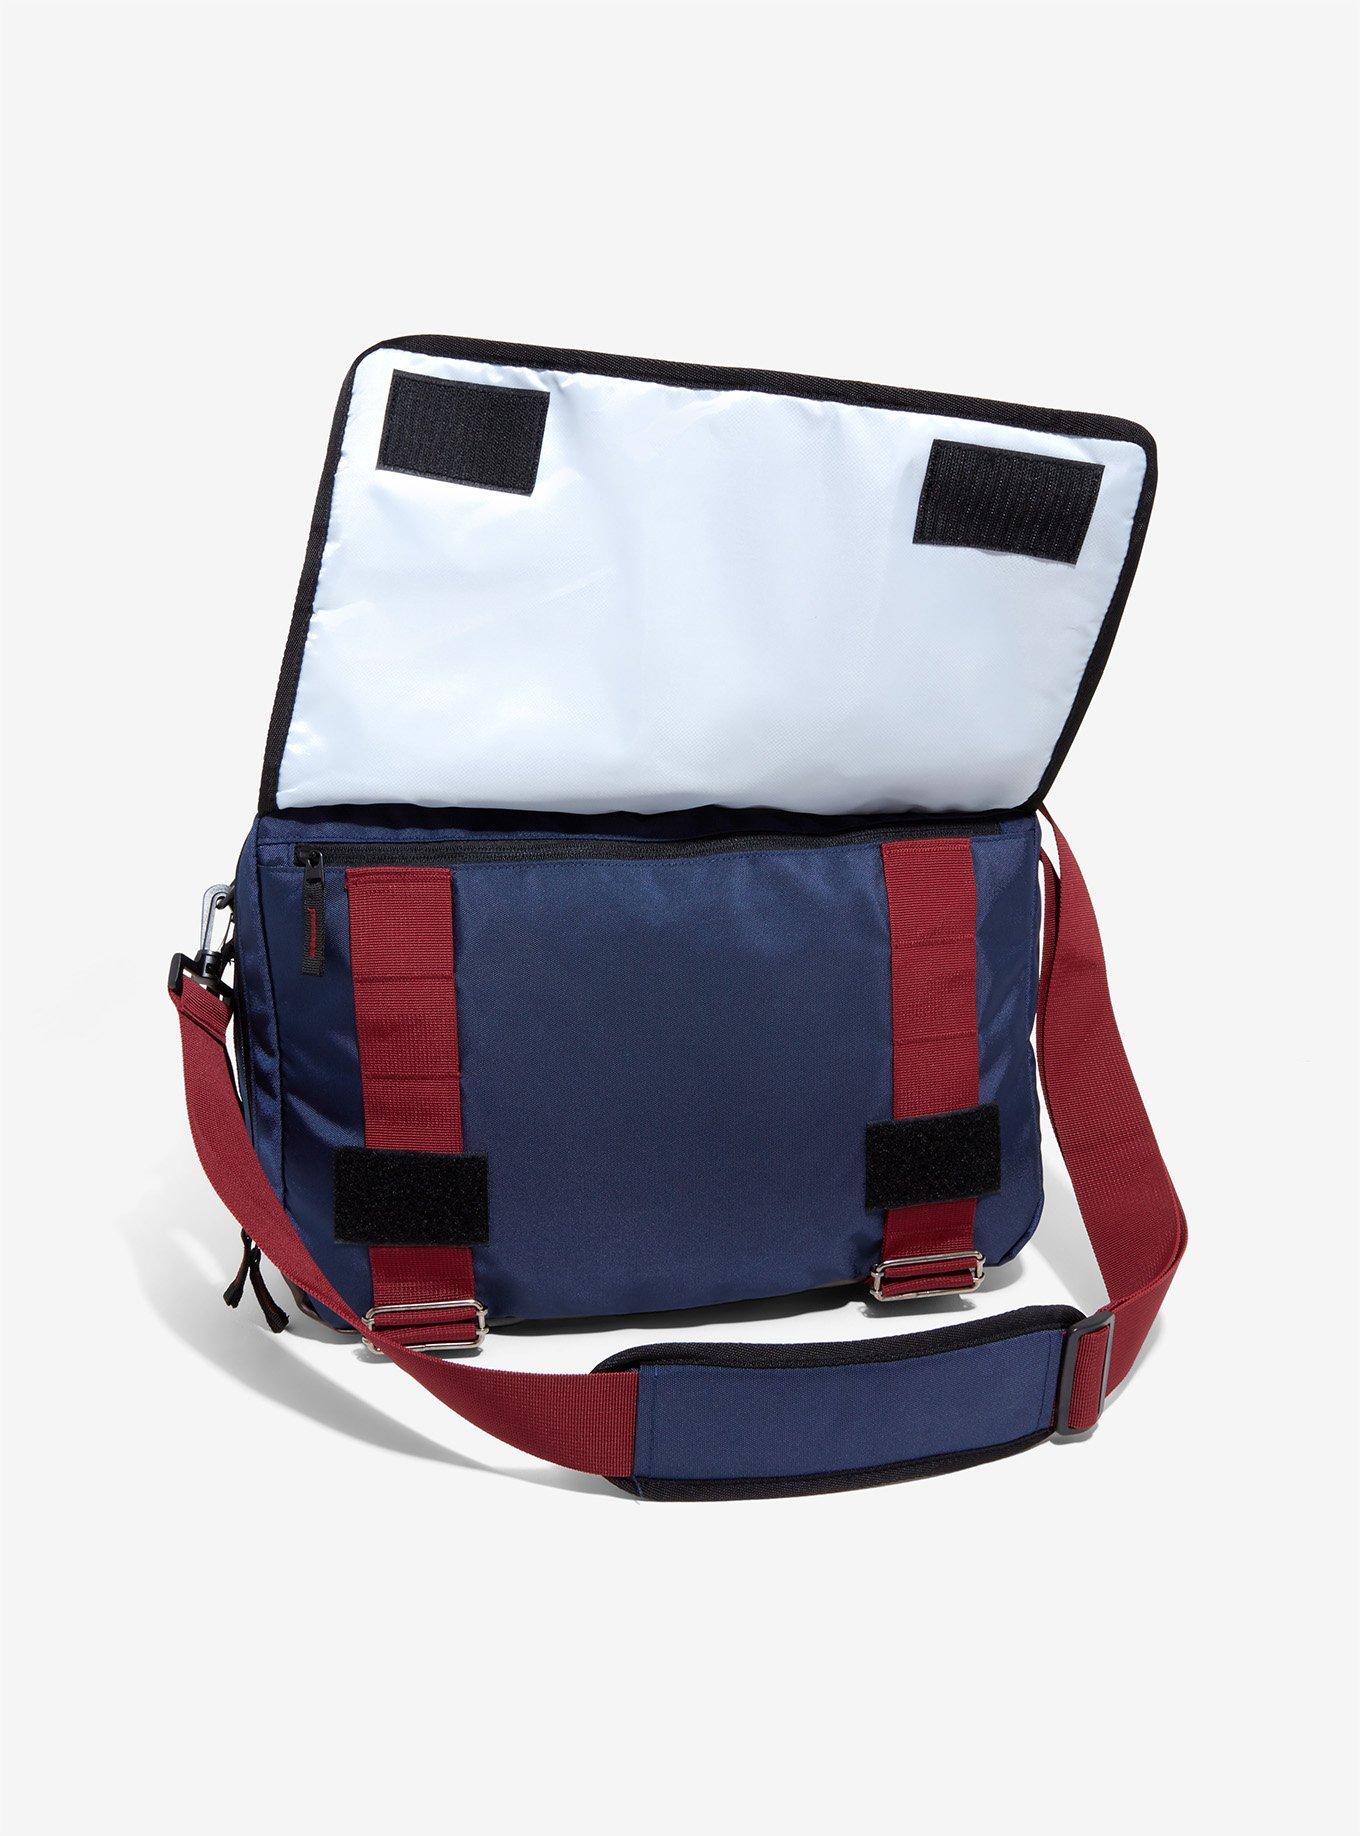 Marvel Captain America Tactical Hybrid Backpack, , alternate